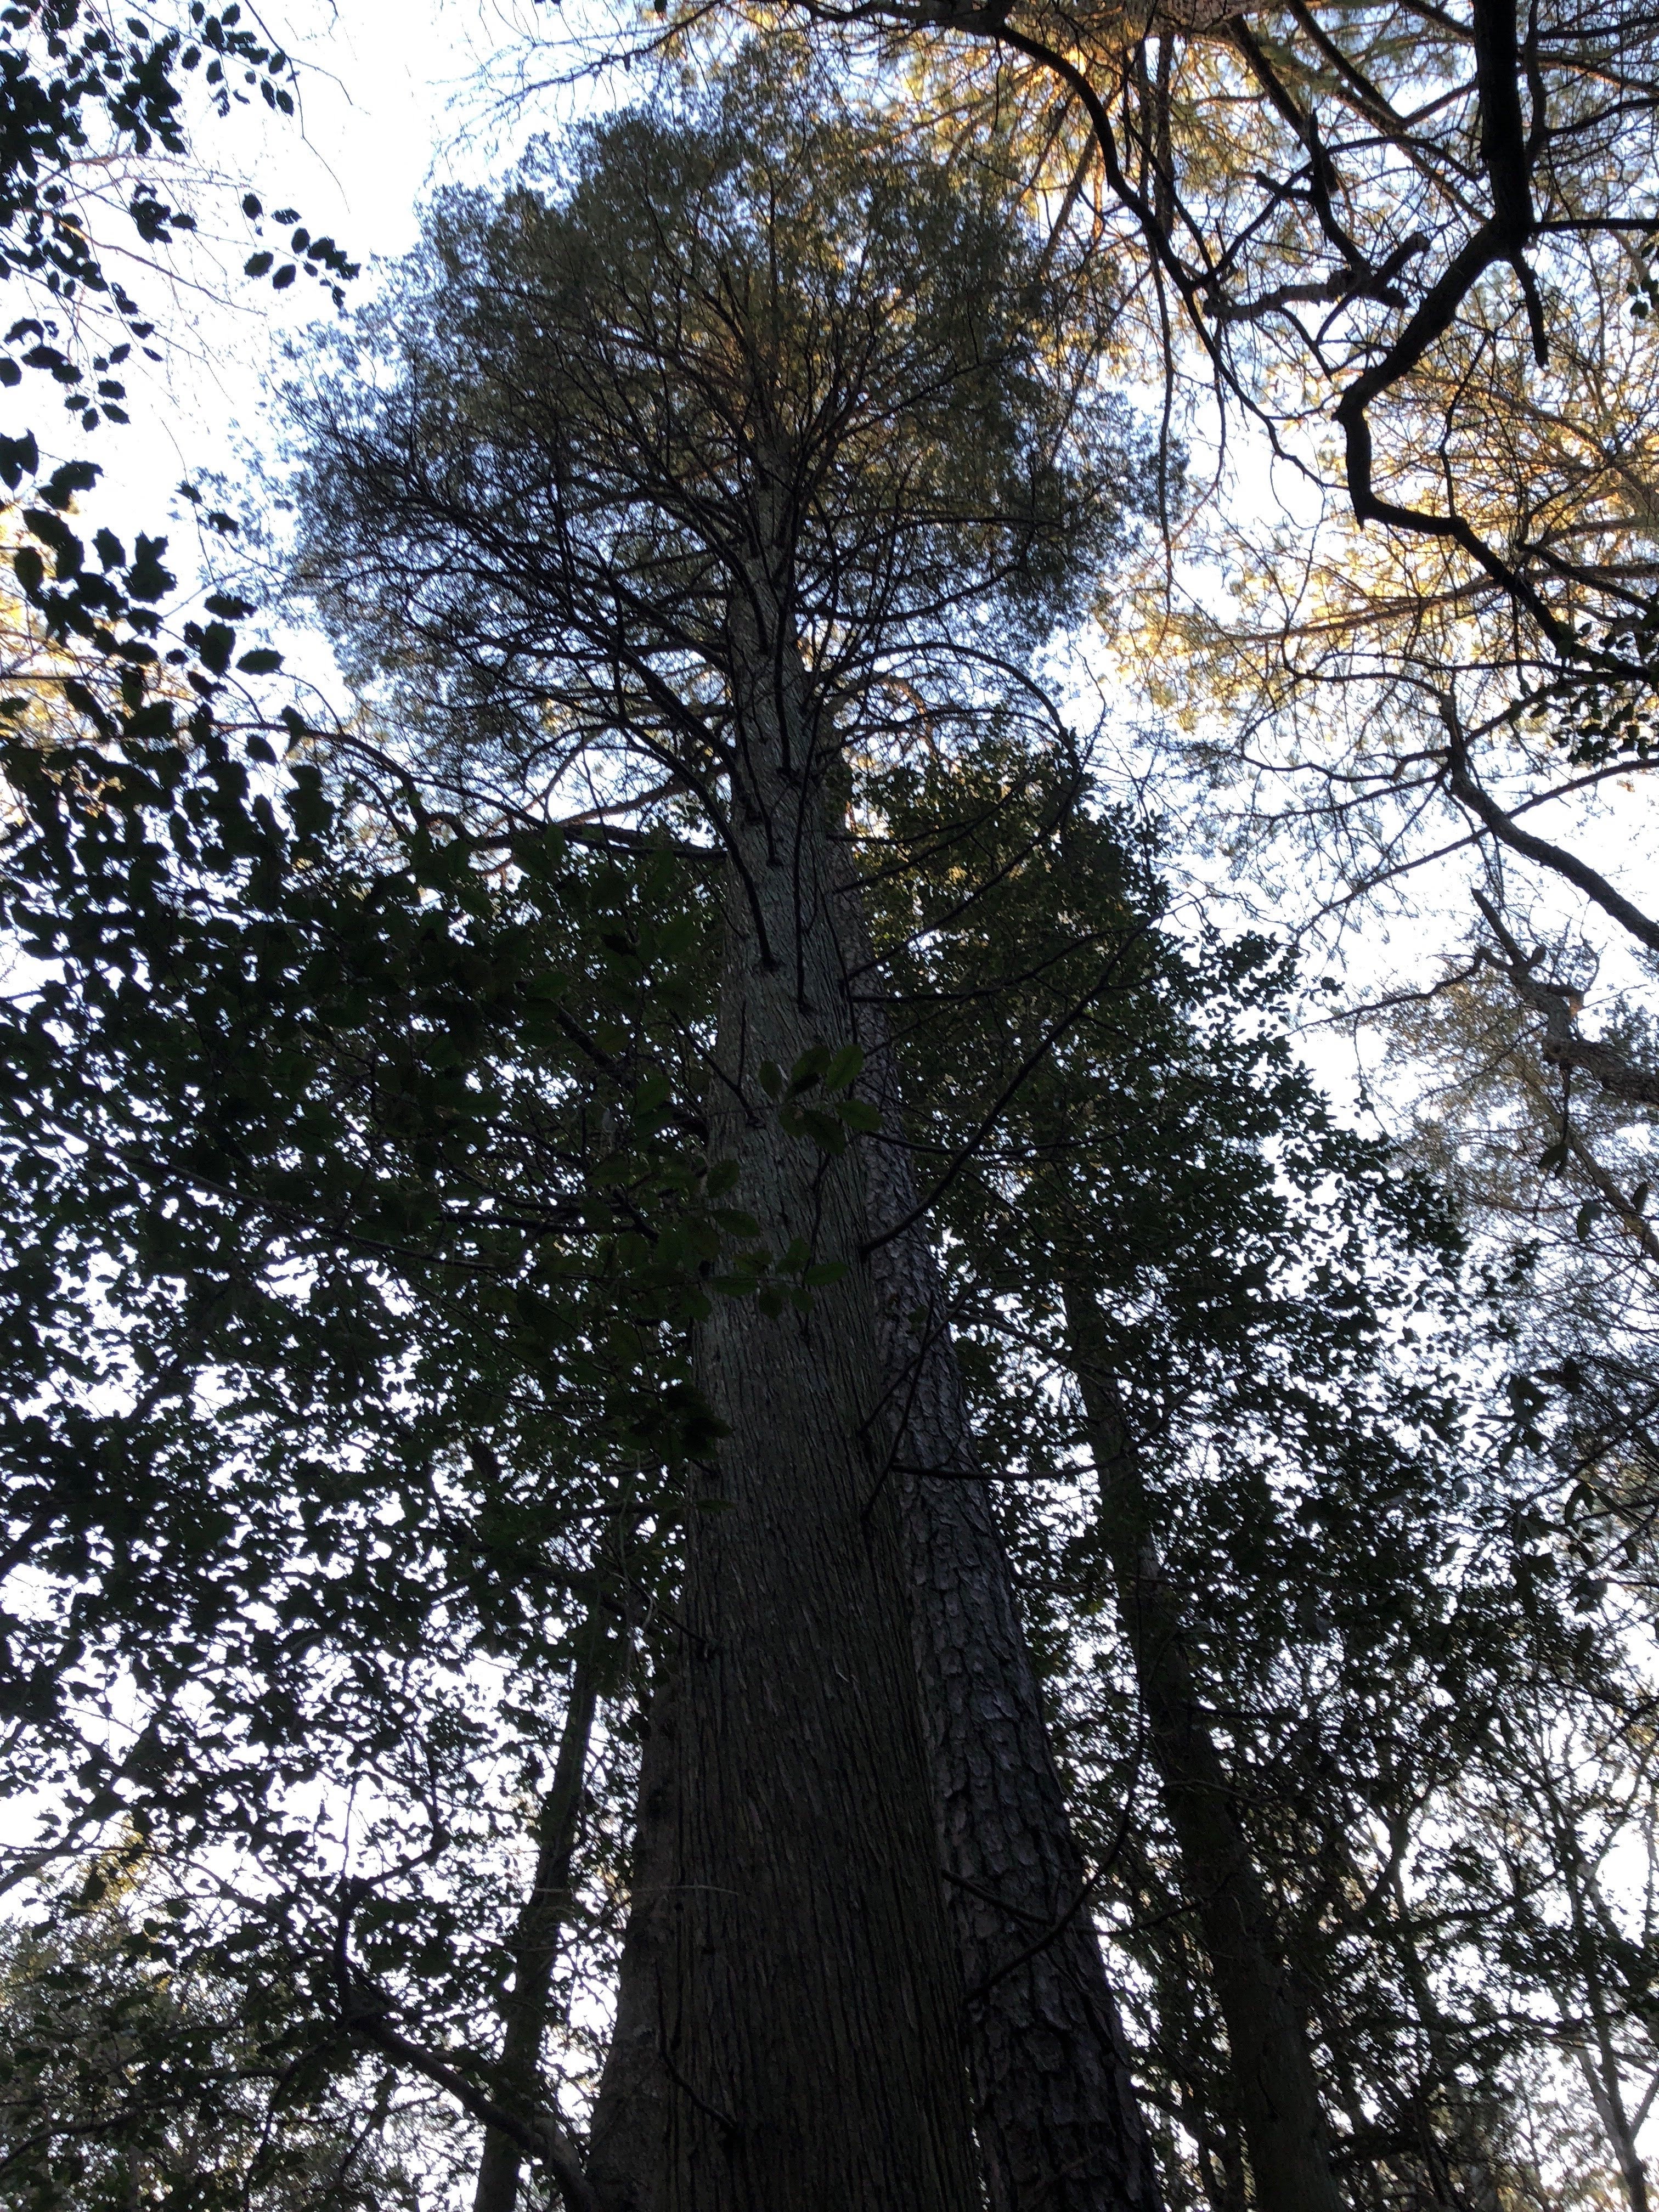 Mature eastern white cedar